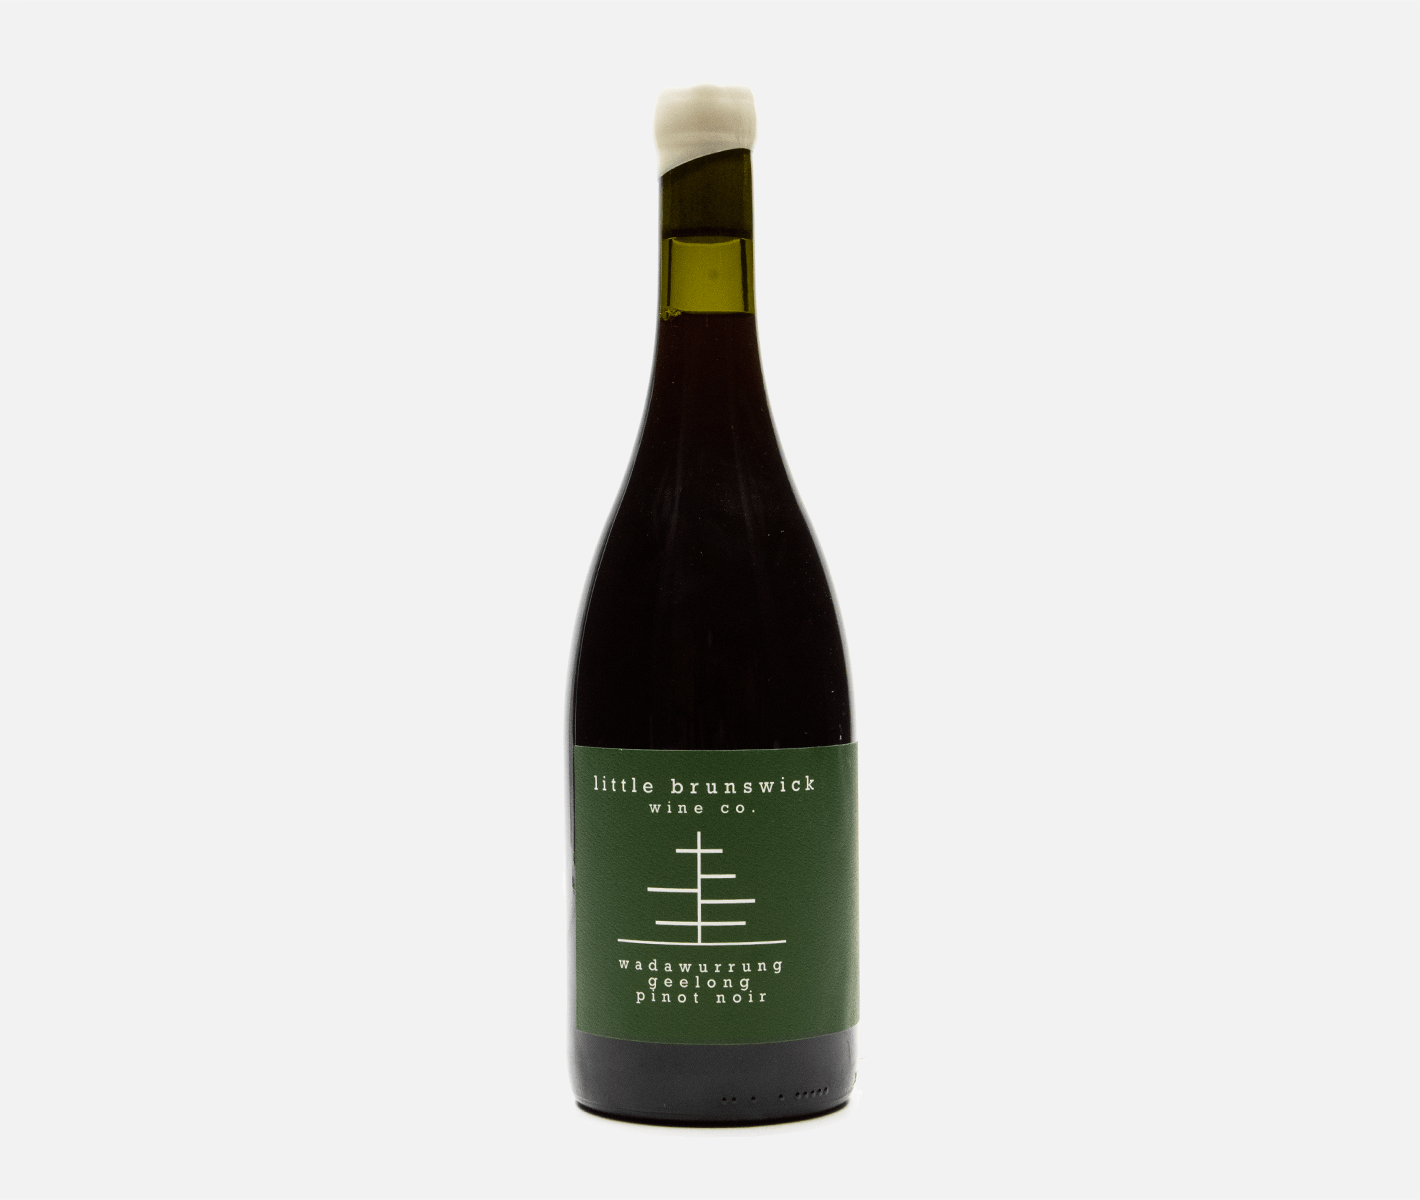 2020 Little Brunswick Wine Co. Wadawurrung Geelong Pinot Noir - DRNKS